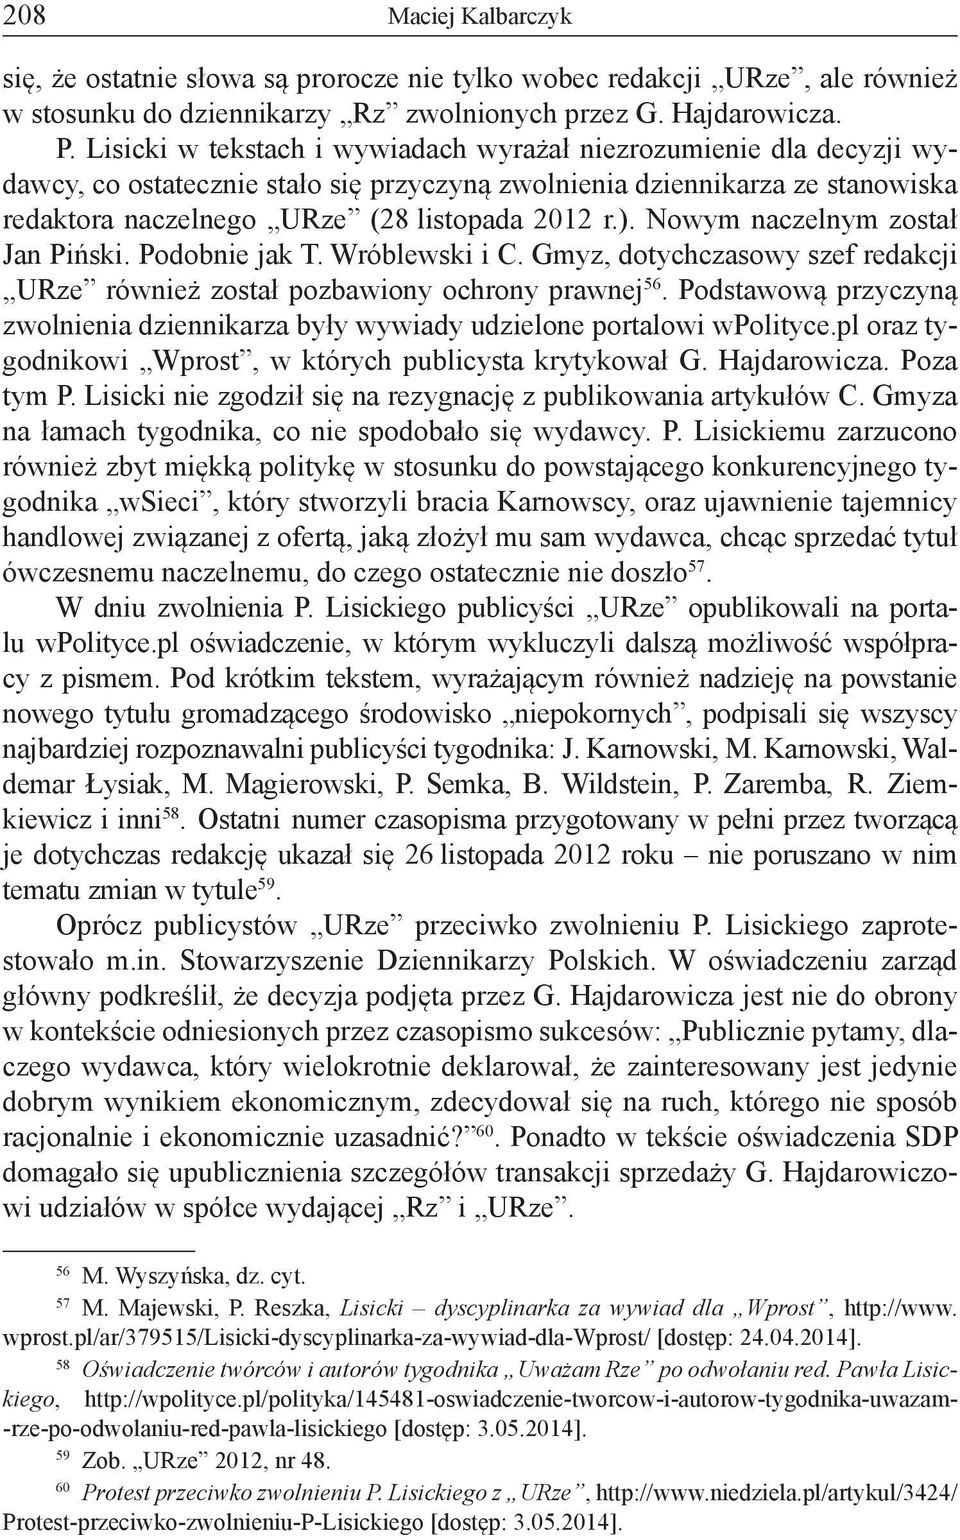 Nowym naczelnym został Jan Piński. Podobnie jak T. Wróblewski i C. Gmyz, dotychczasowy szef redakcji URze również został pozbawiony ochrony prawnej 56.